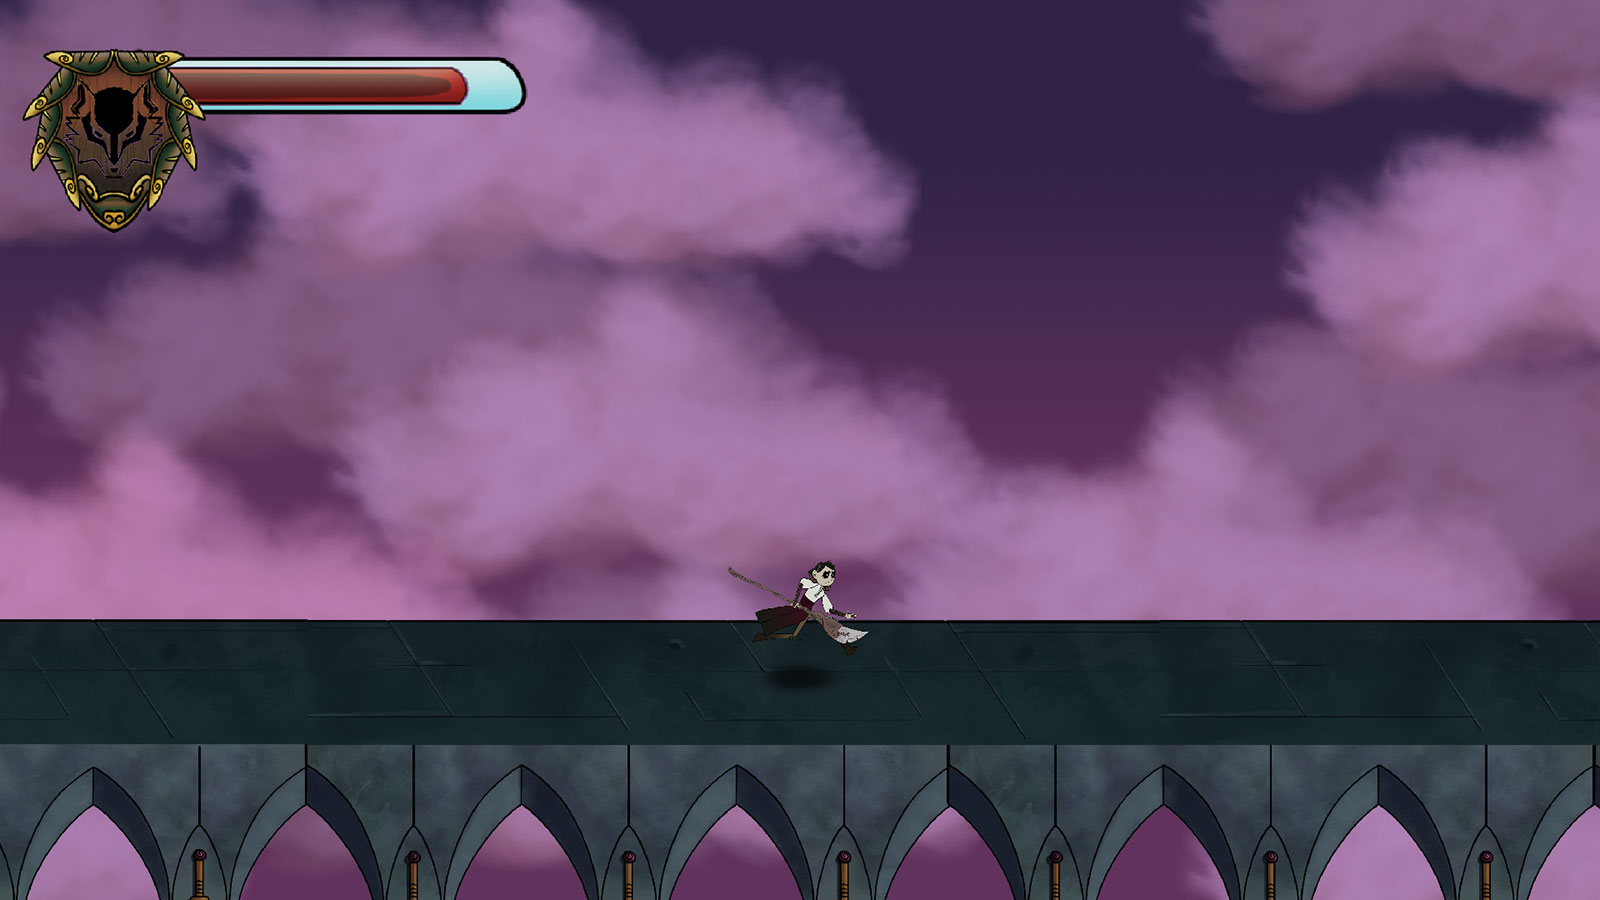 Vista panorámica del jugador corriendo a lo largo de un acueducto sobre un cielo morado